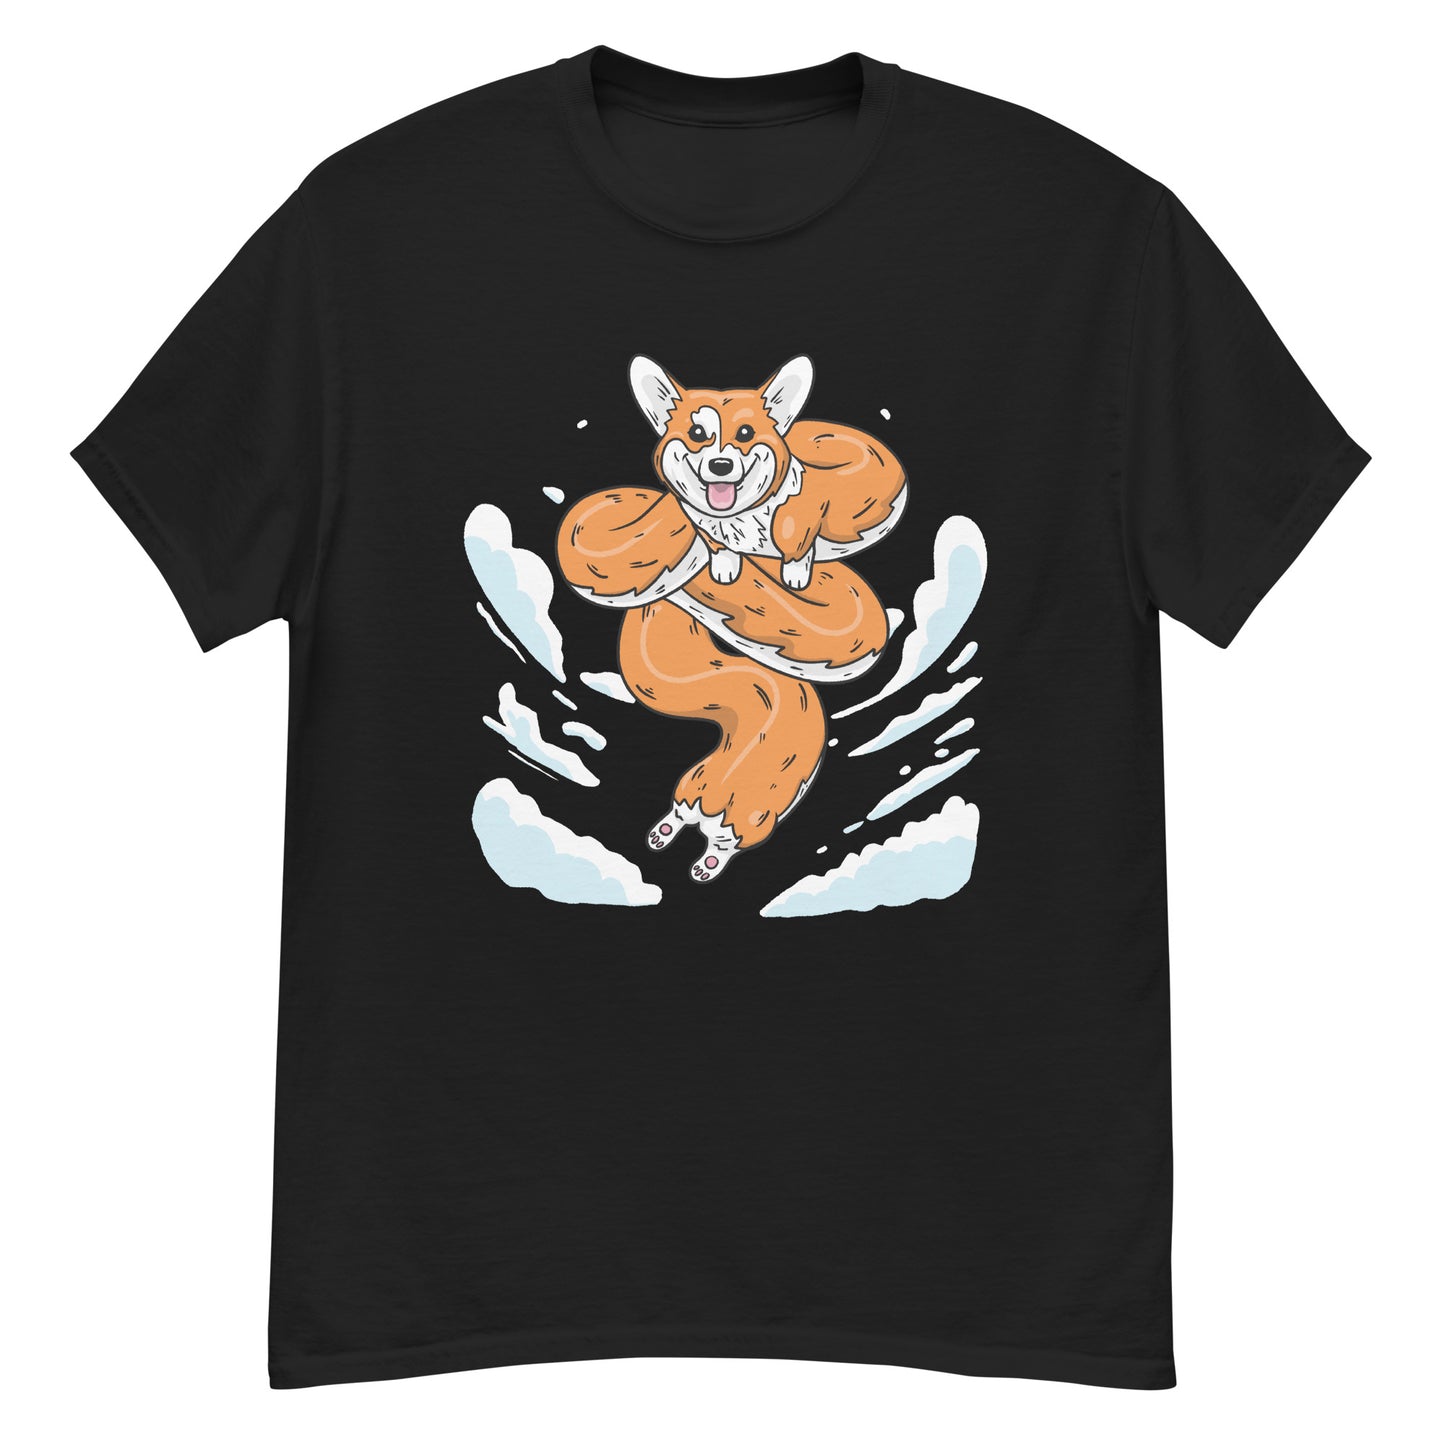 Dragon Corgi - T-Shirt for Anime and Dog Lovers